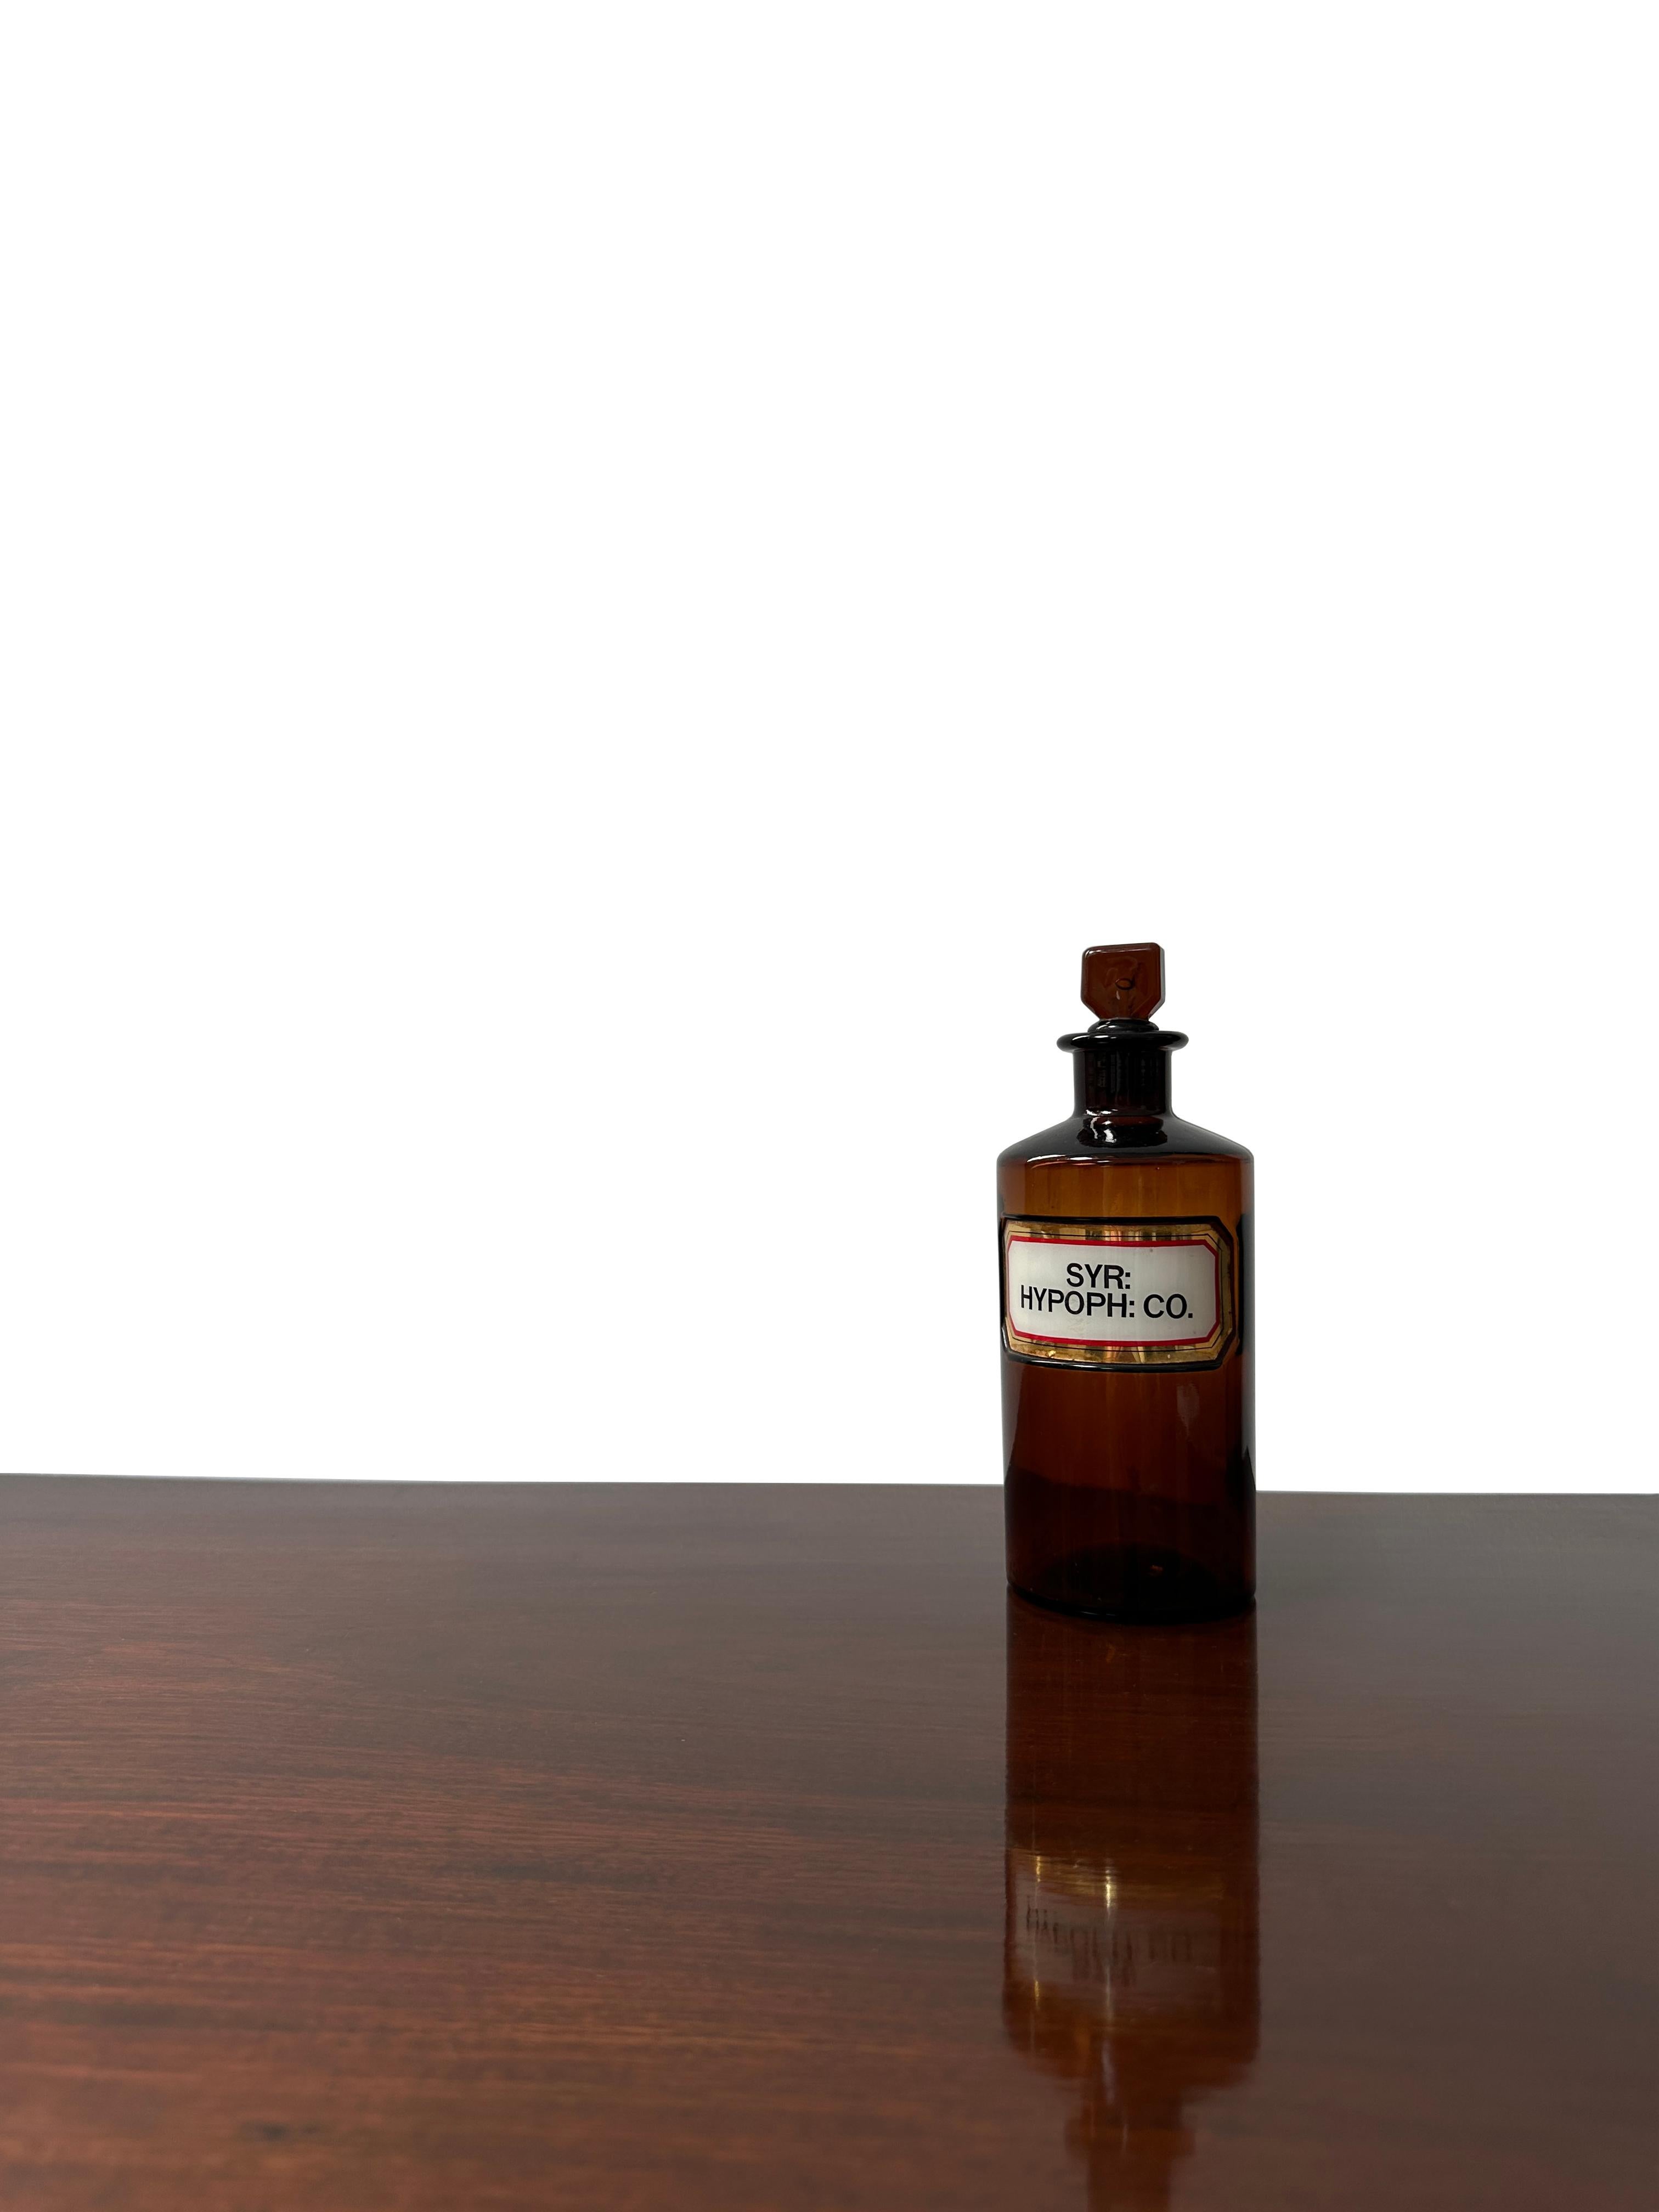 - Une belle bouteille de pharmacie victorienne en verre brun, vers 1900.
- Excellente plaque en verre, lettrée et peinte en doré sur le devant et avec le bouchon en verre d'origine. 
- La fine étiquette blanche, dorée et rouge recouverte d'une